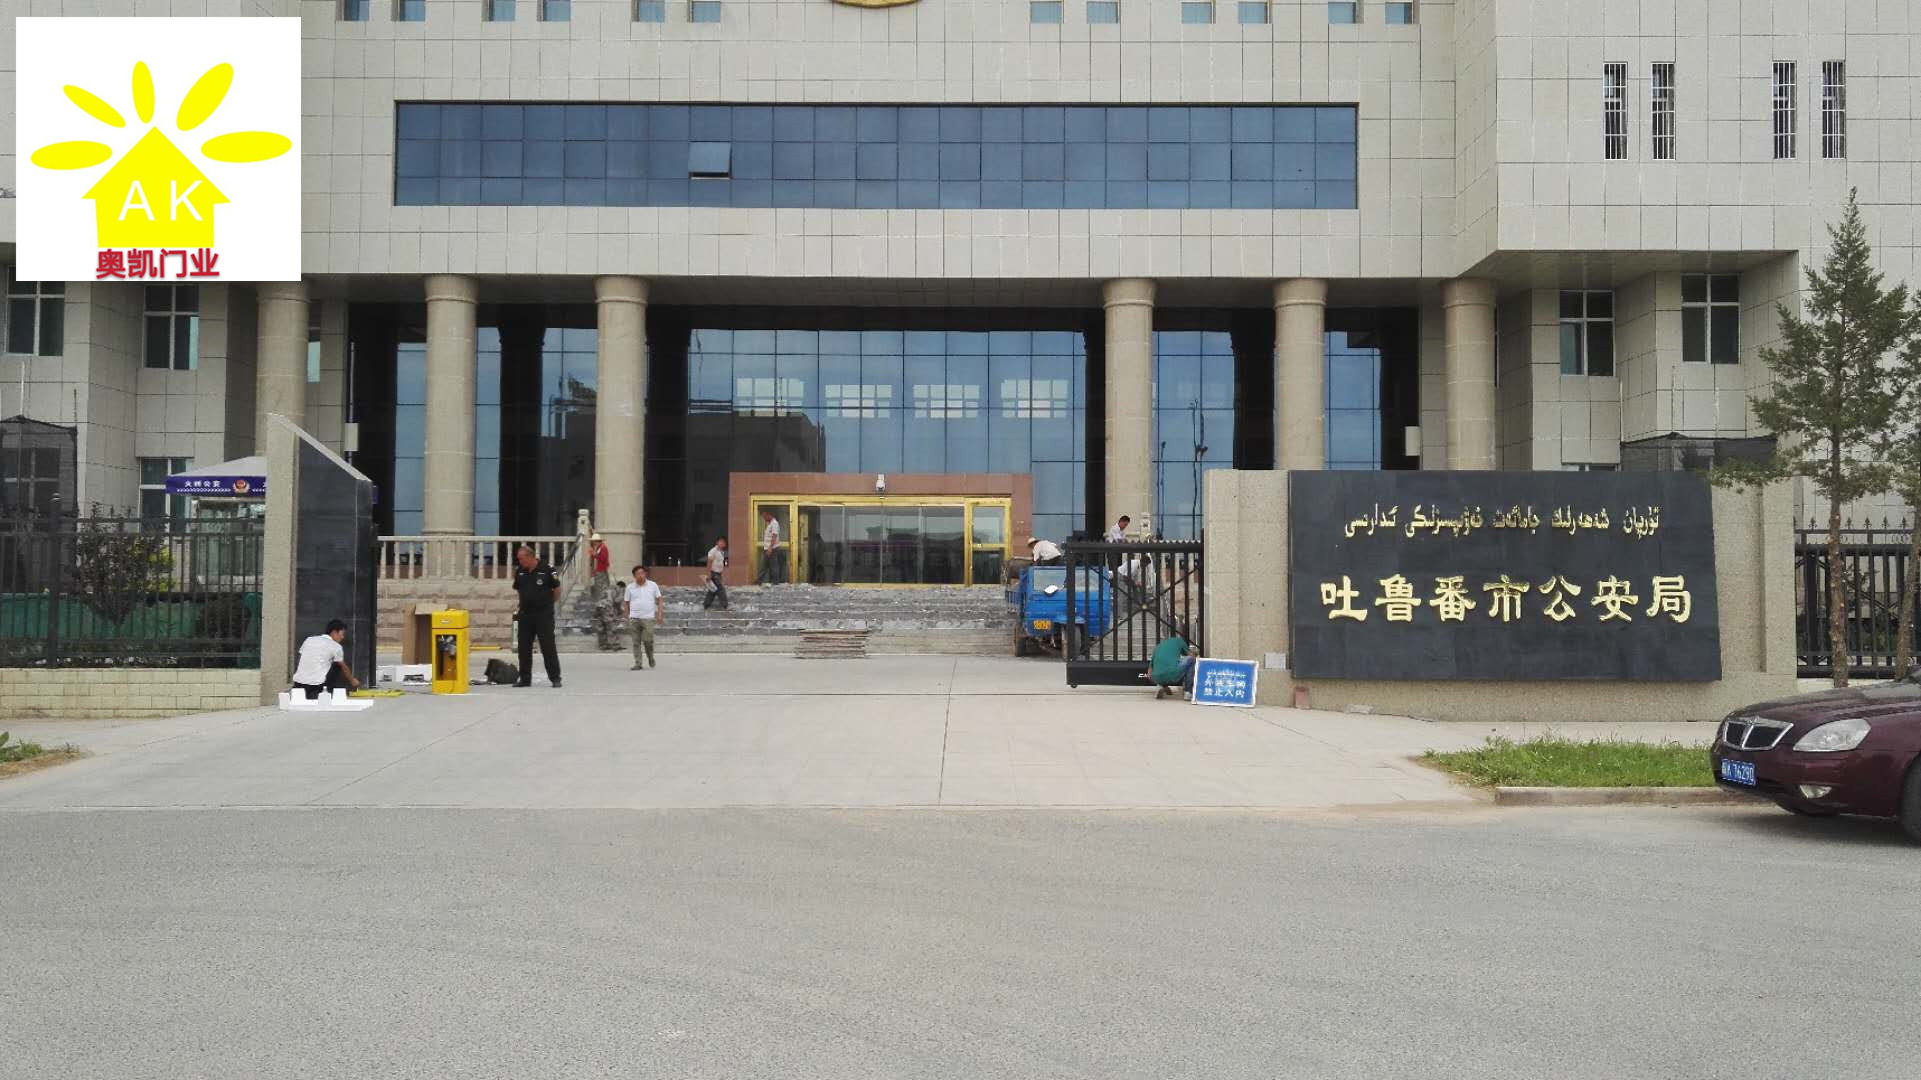 吐鲁番市公安局